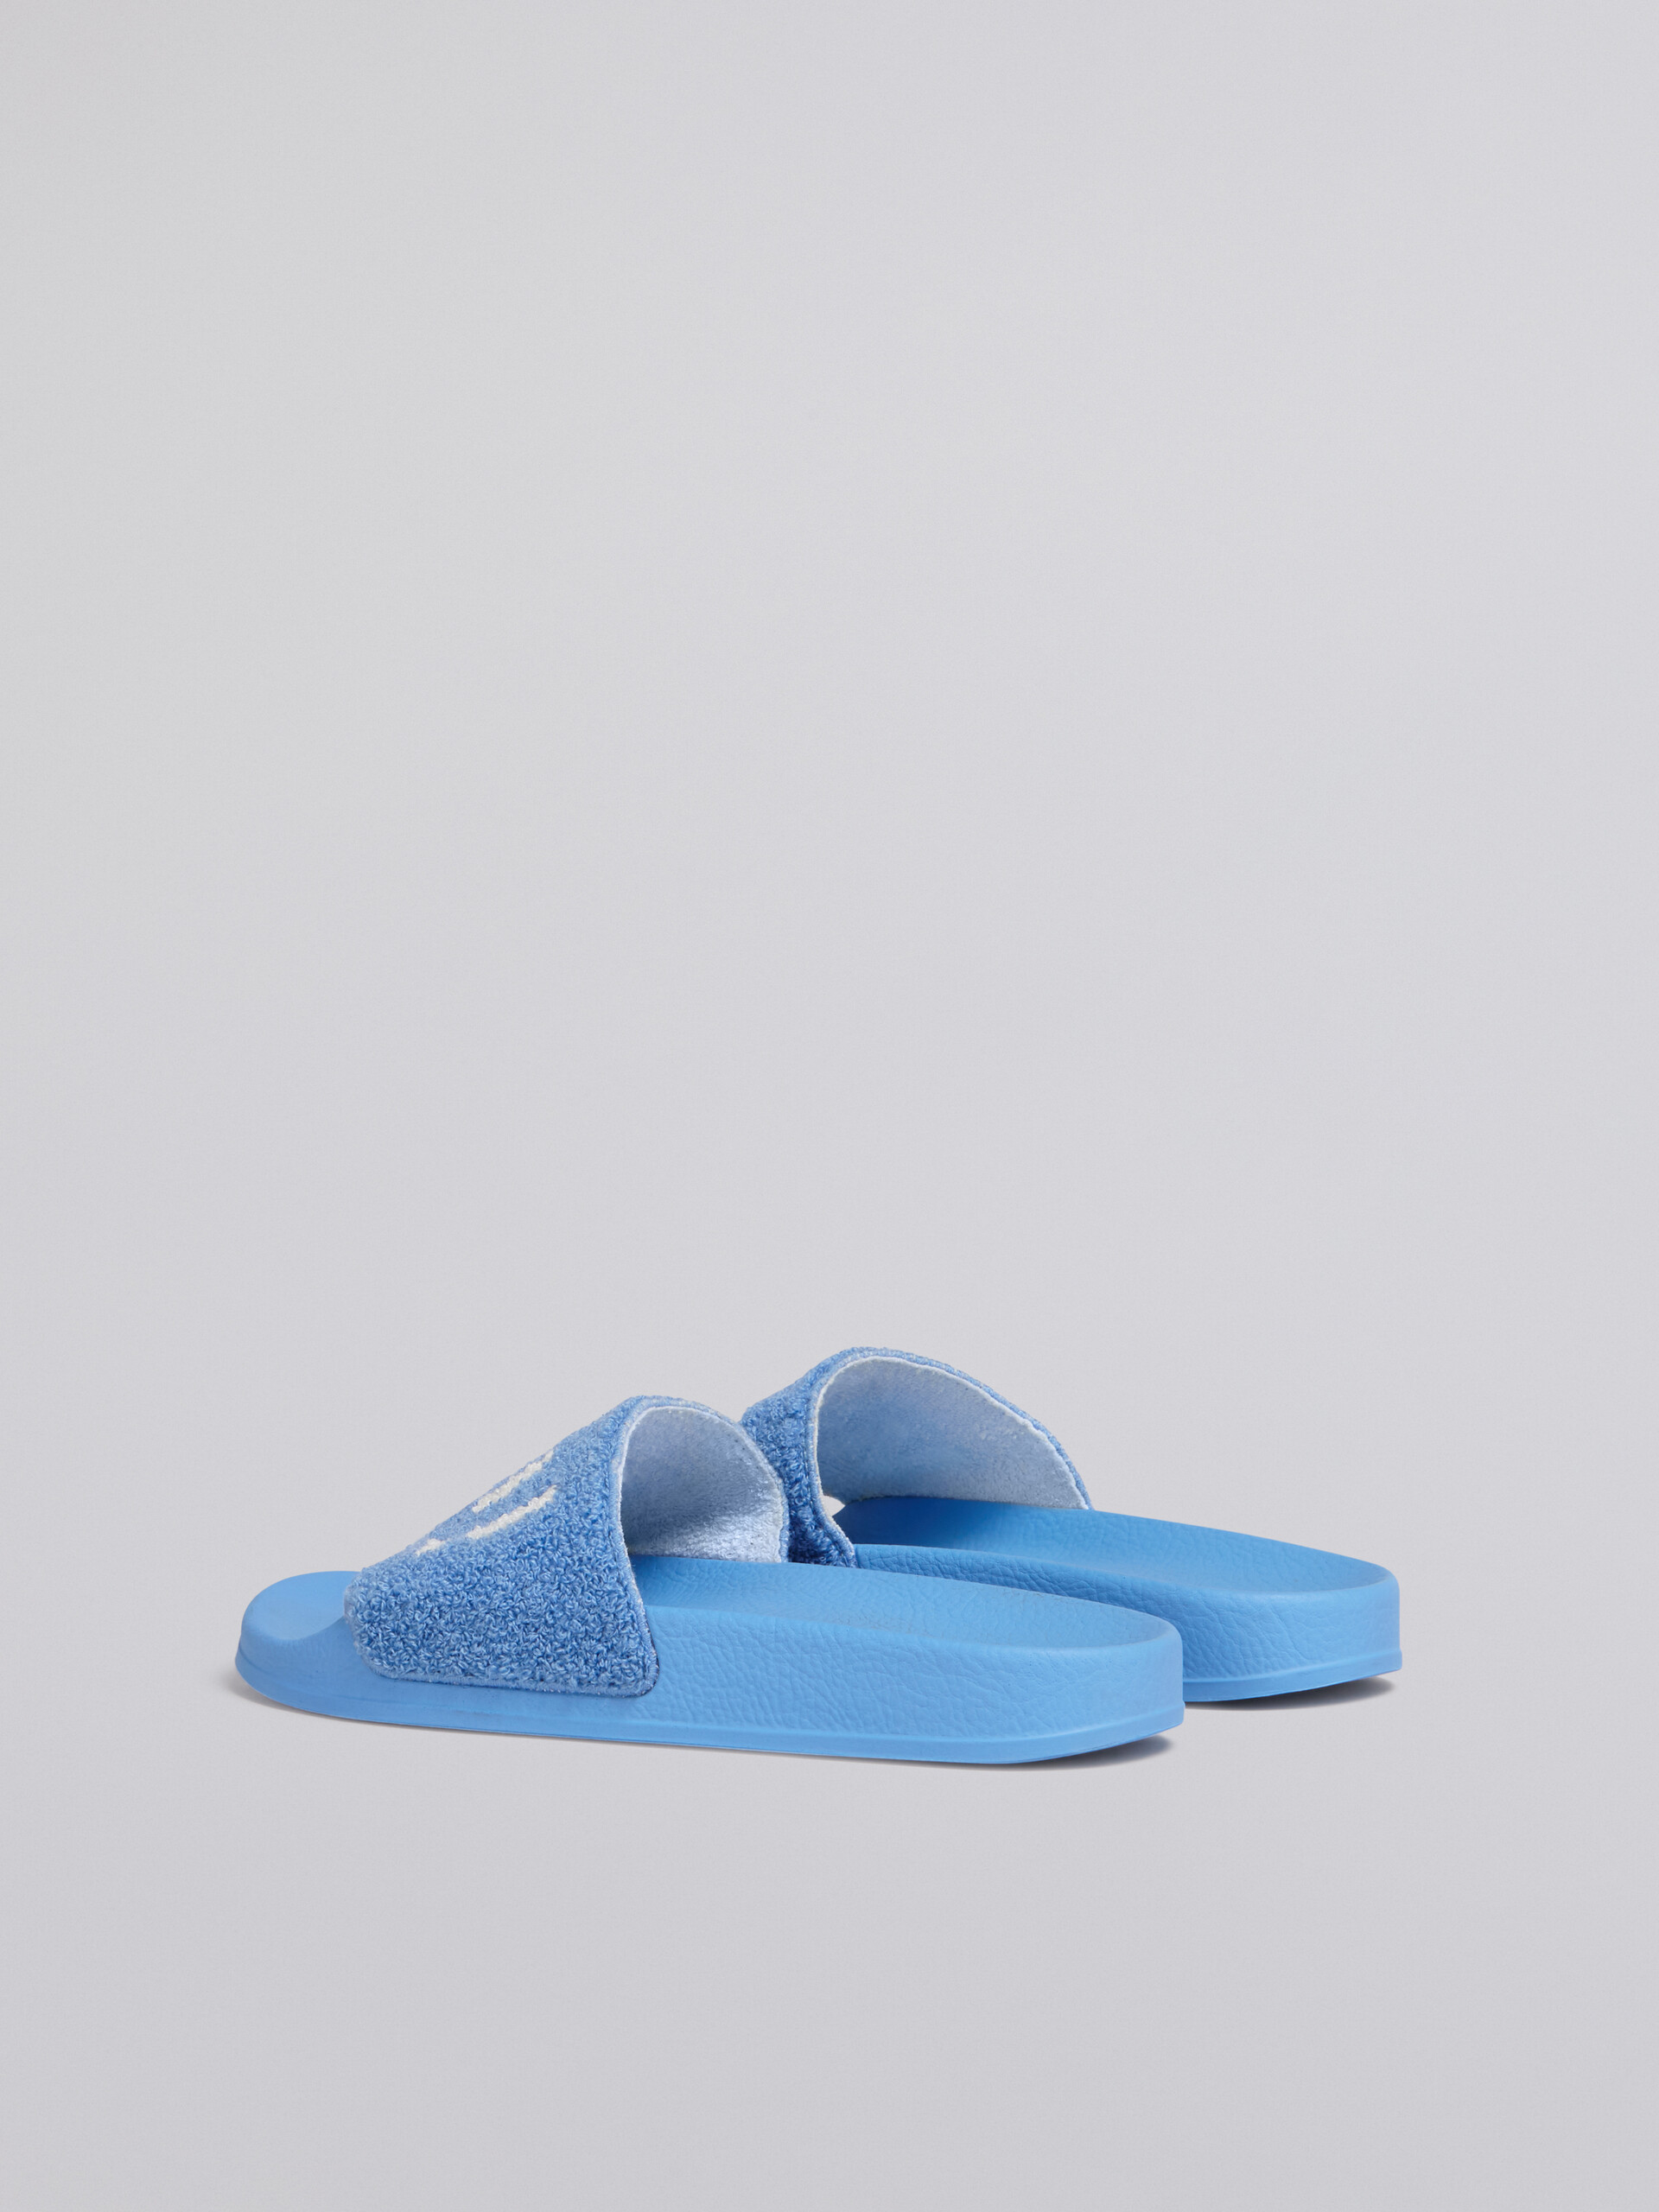 Sandalo in gomma con tomaia in spugna azzurro e bianco - Sandali - Image 3